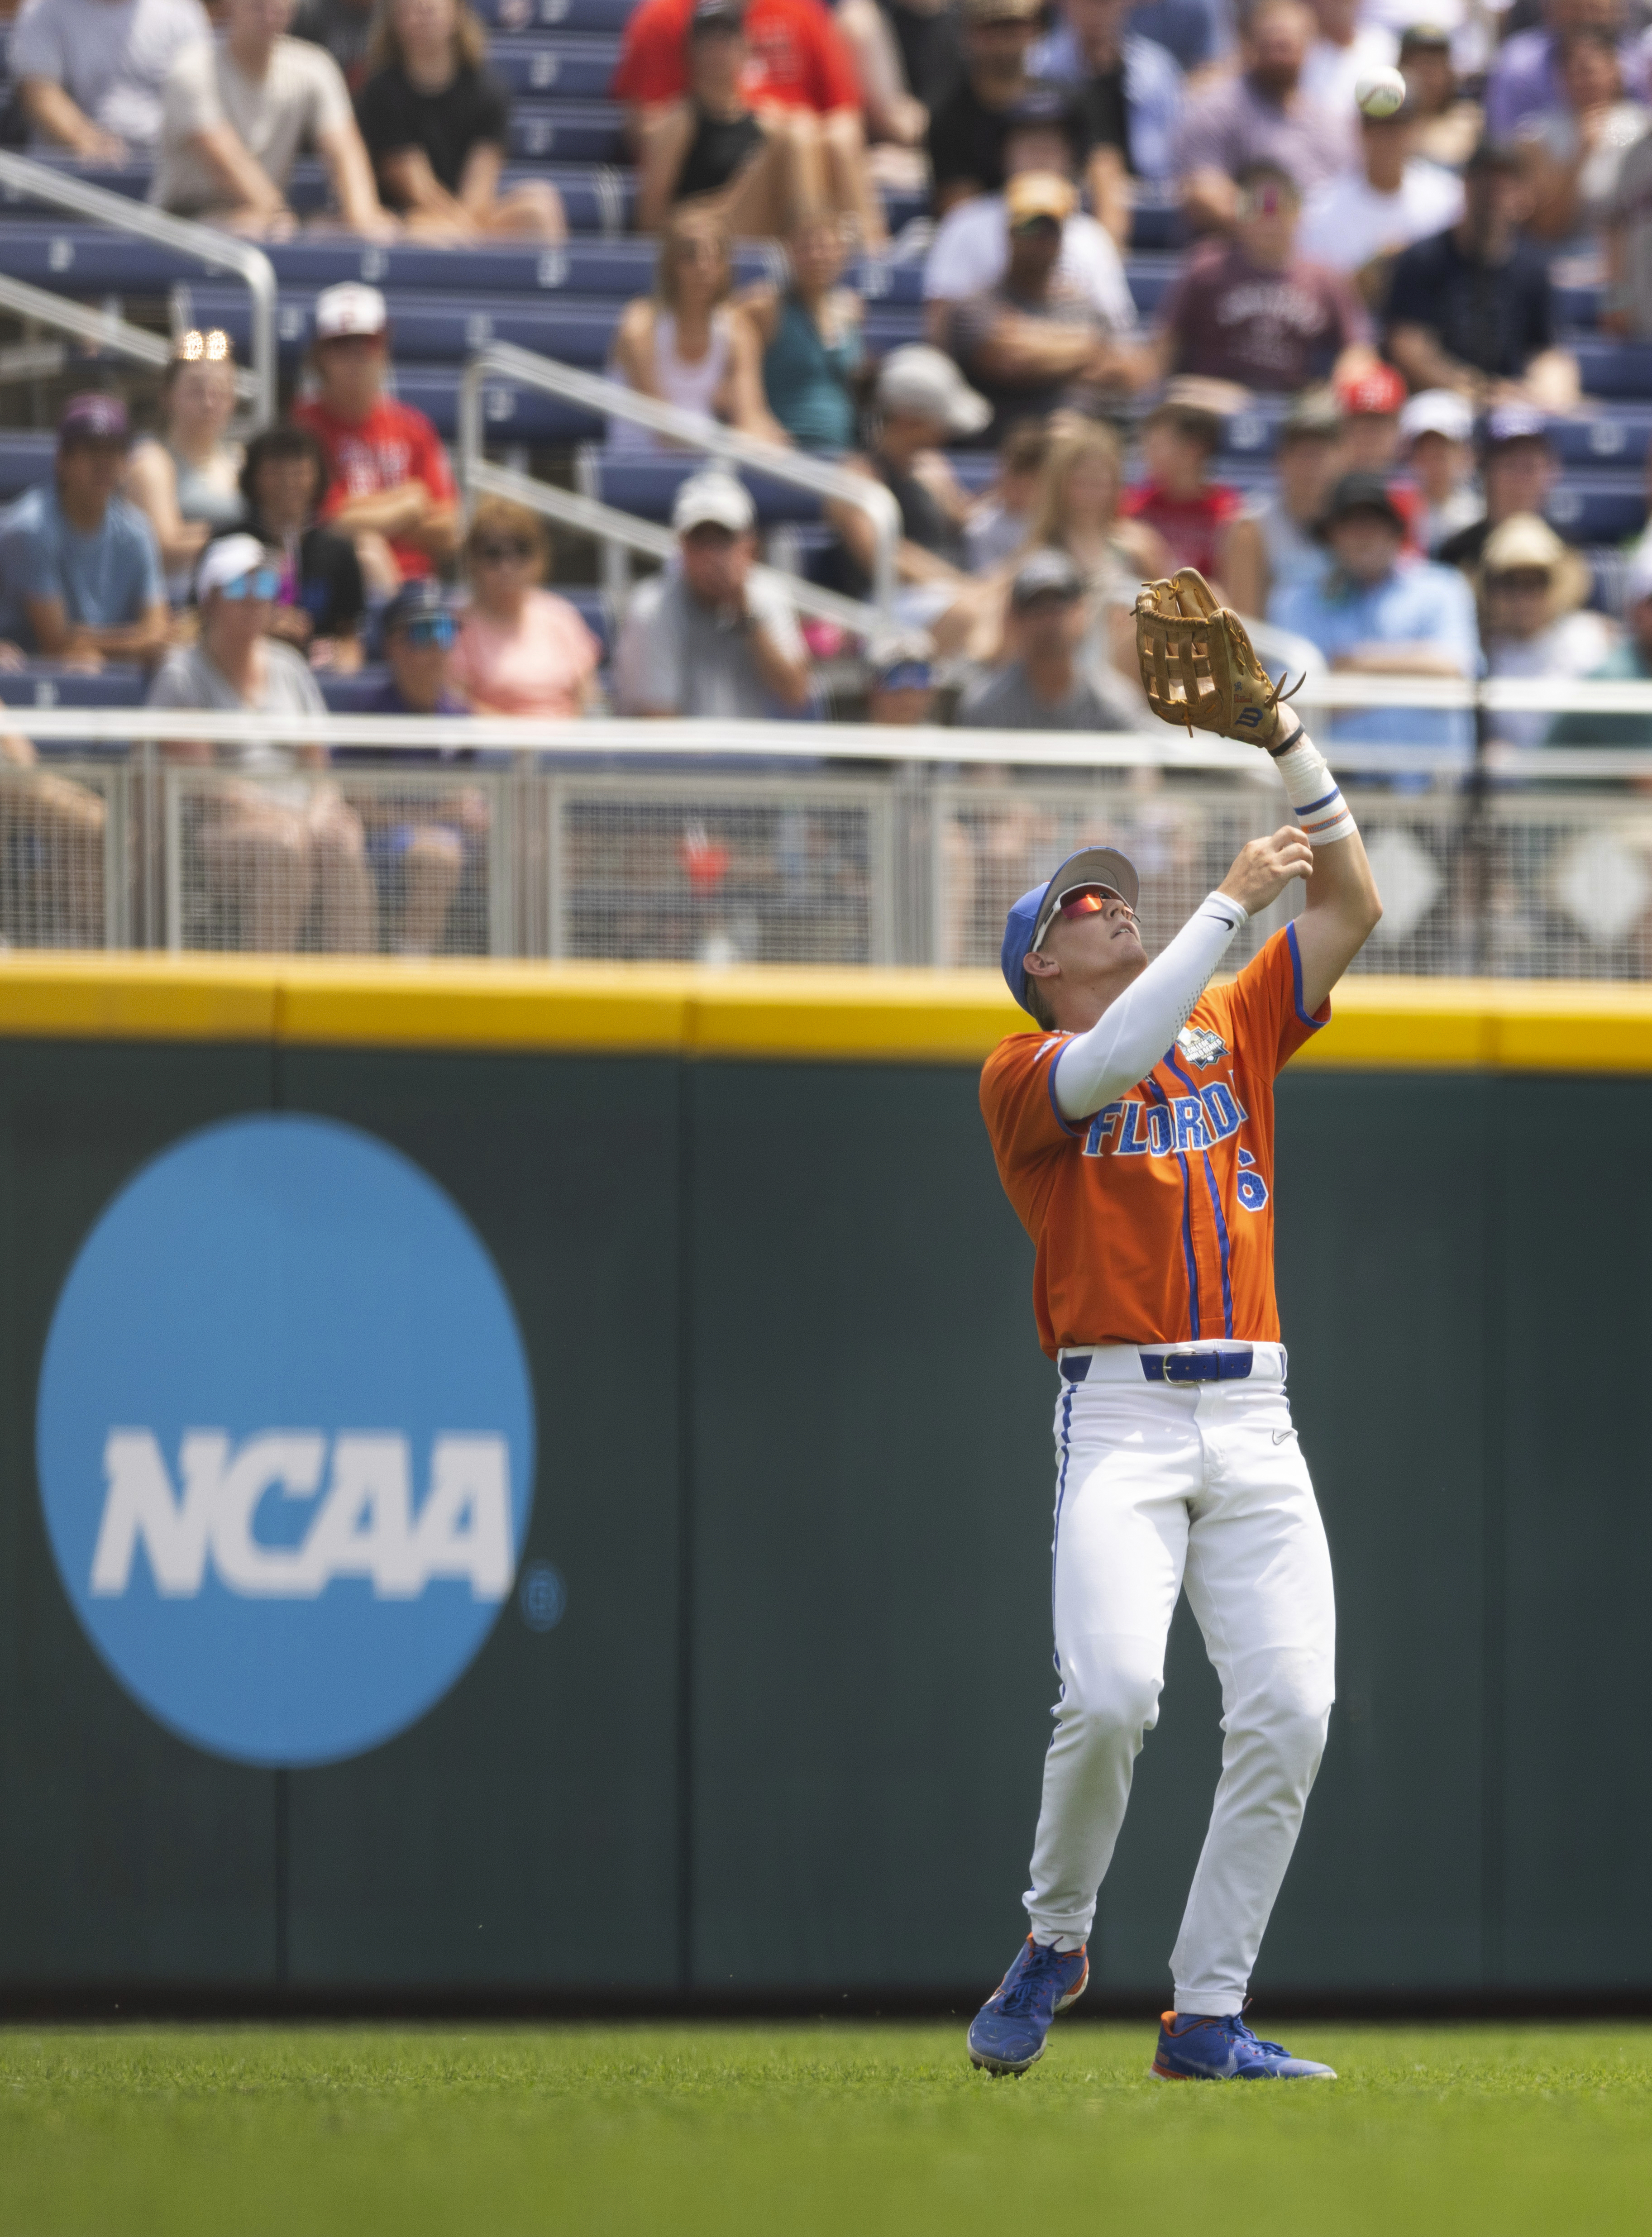 Florida Gators baseball: See the ball, hit the ball